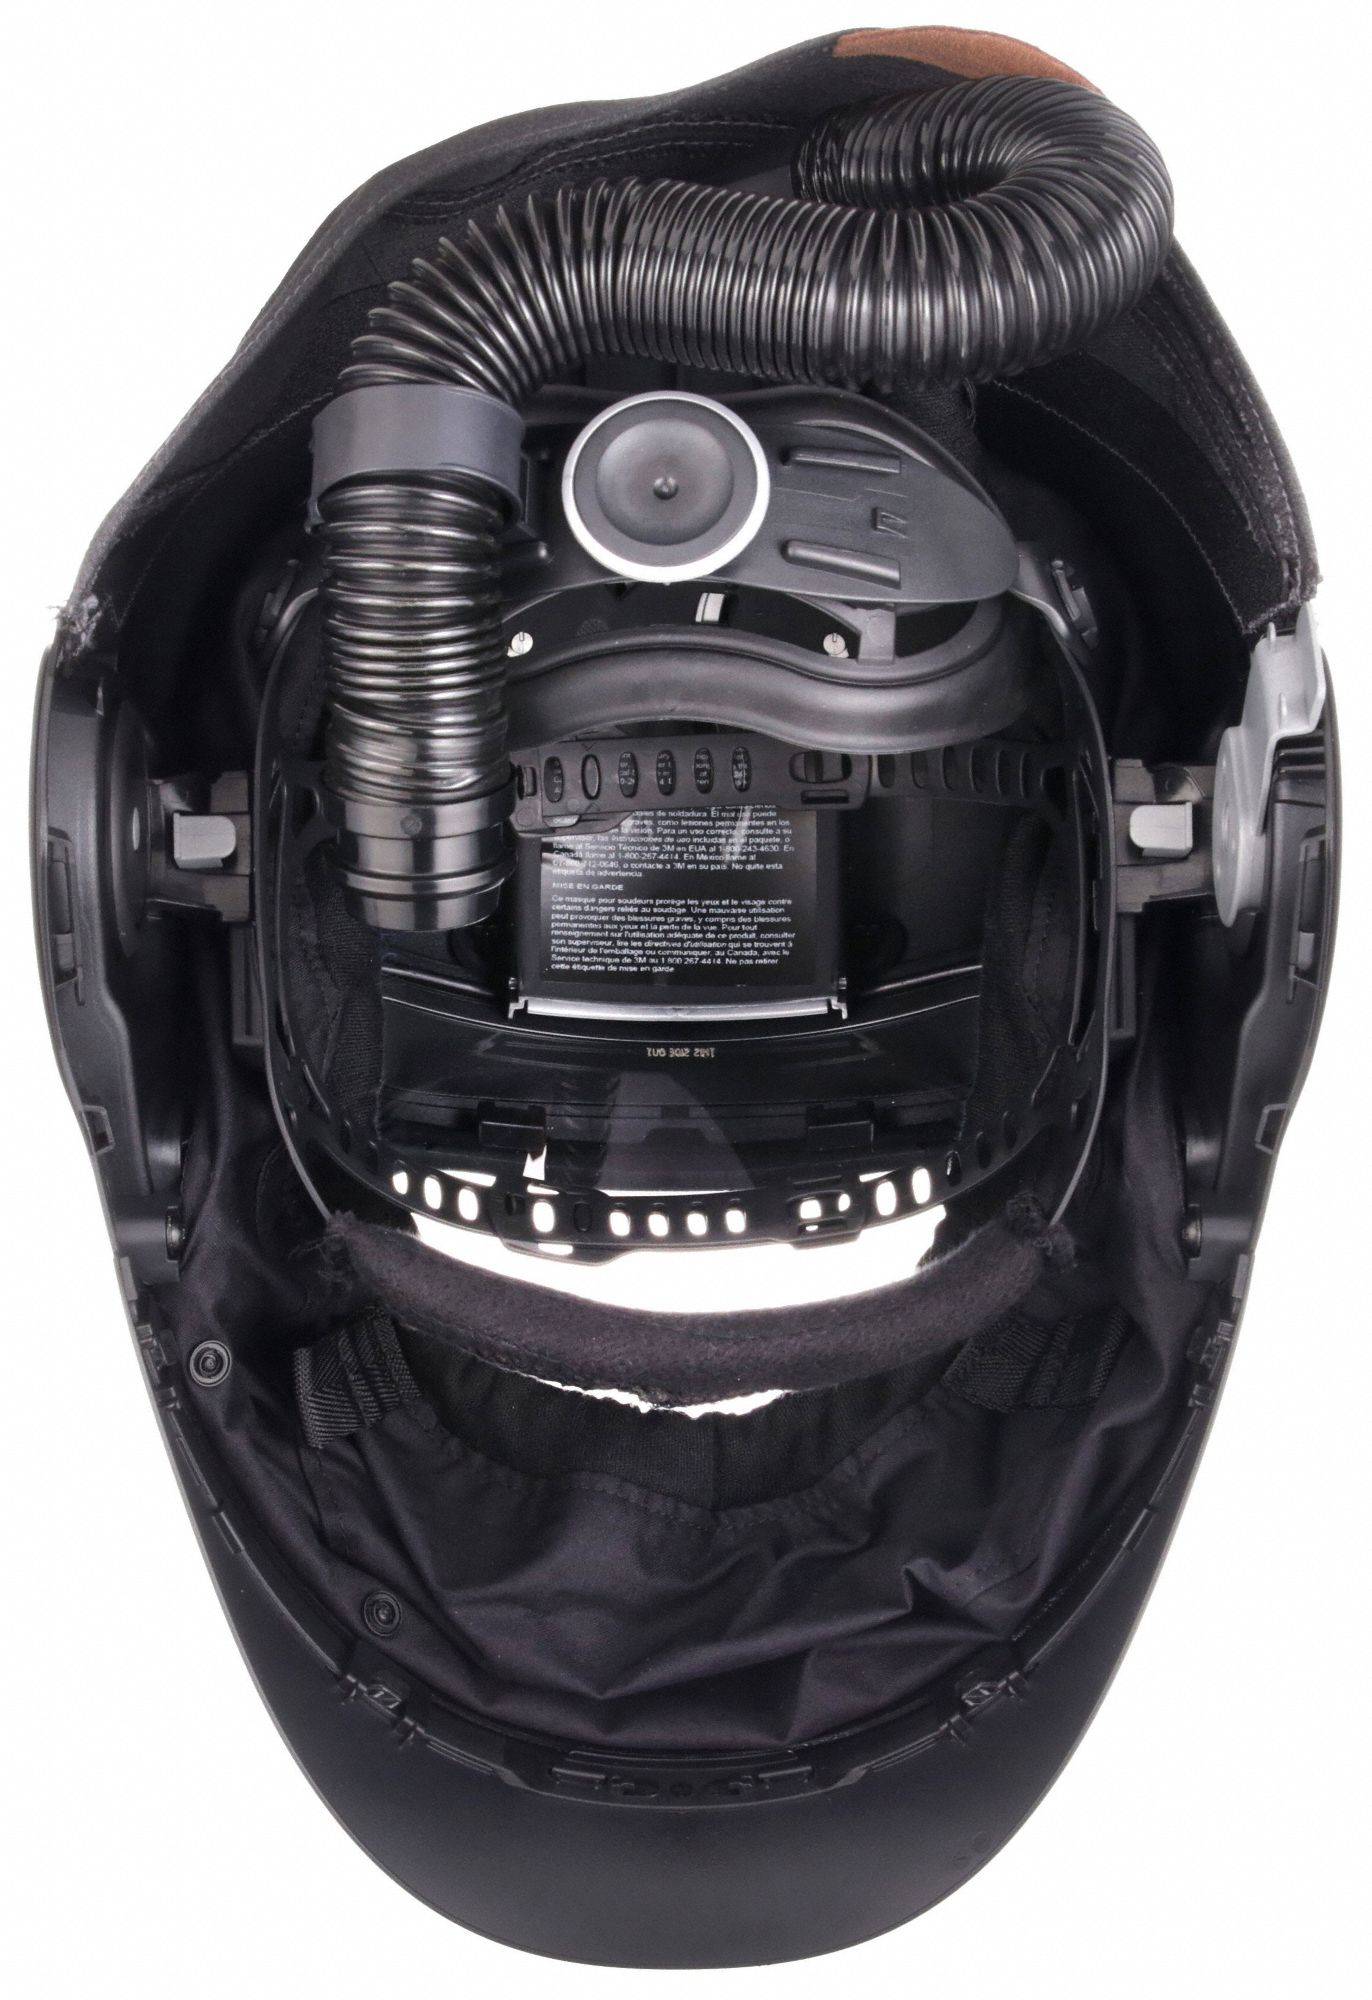 Masque de soudage G5-01 3M Speedglas + filtre de soudage G5-01VC +